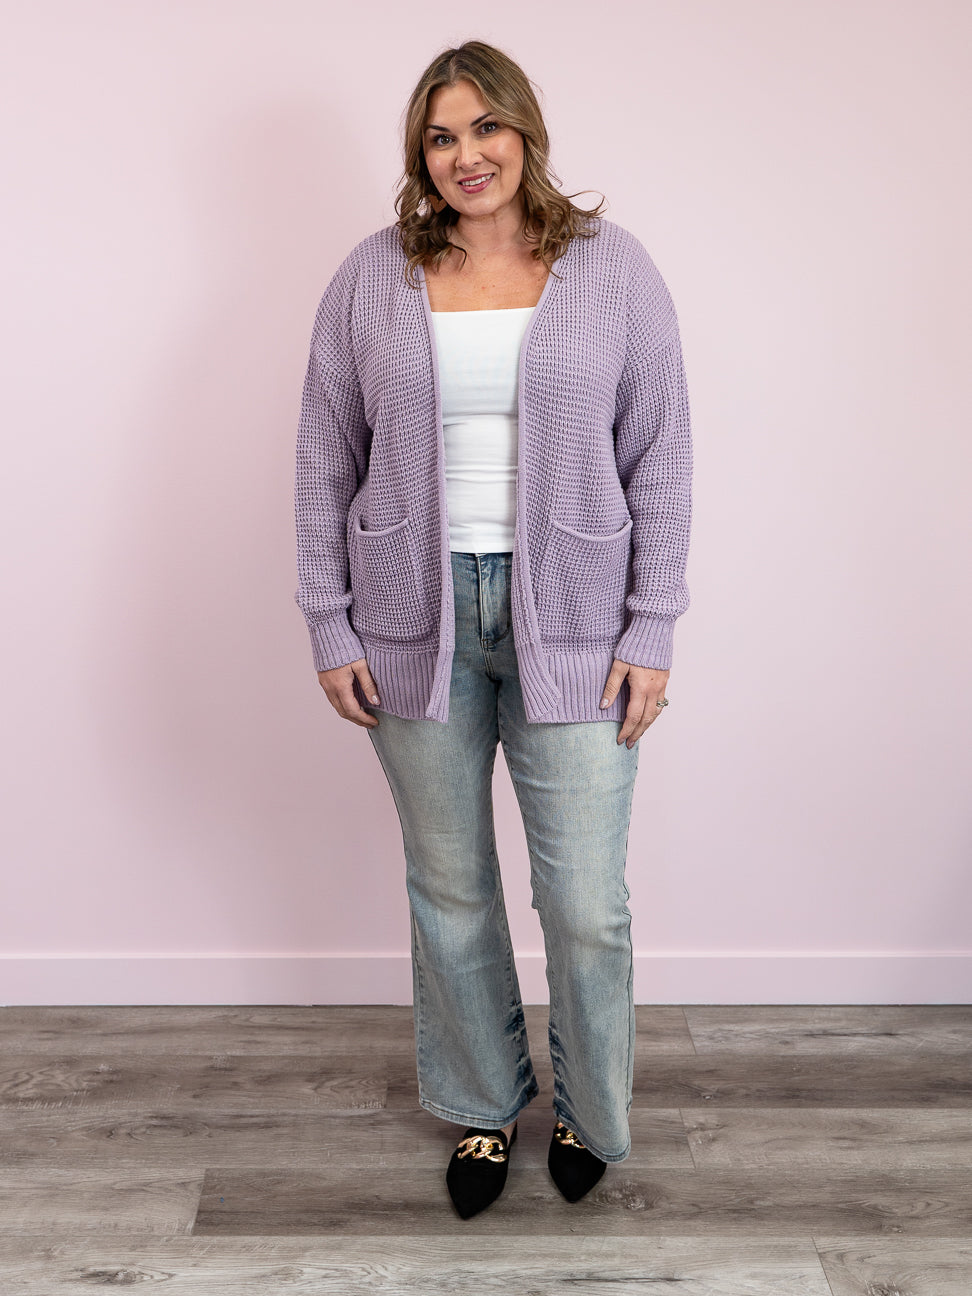 Floral Knit Cardigan - Juliet - Morning Lavender Online Boutique